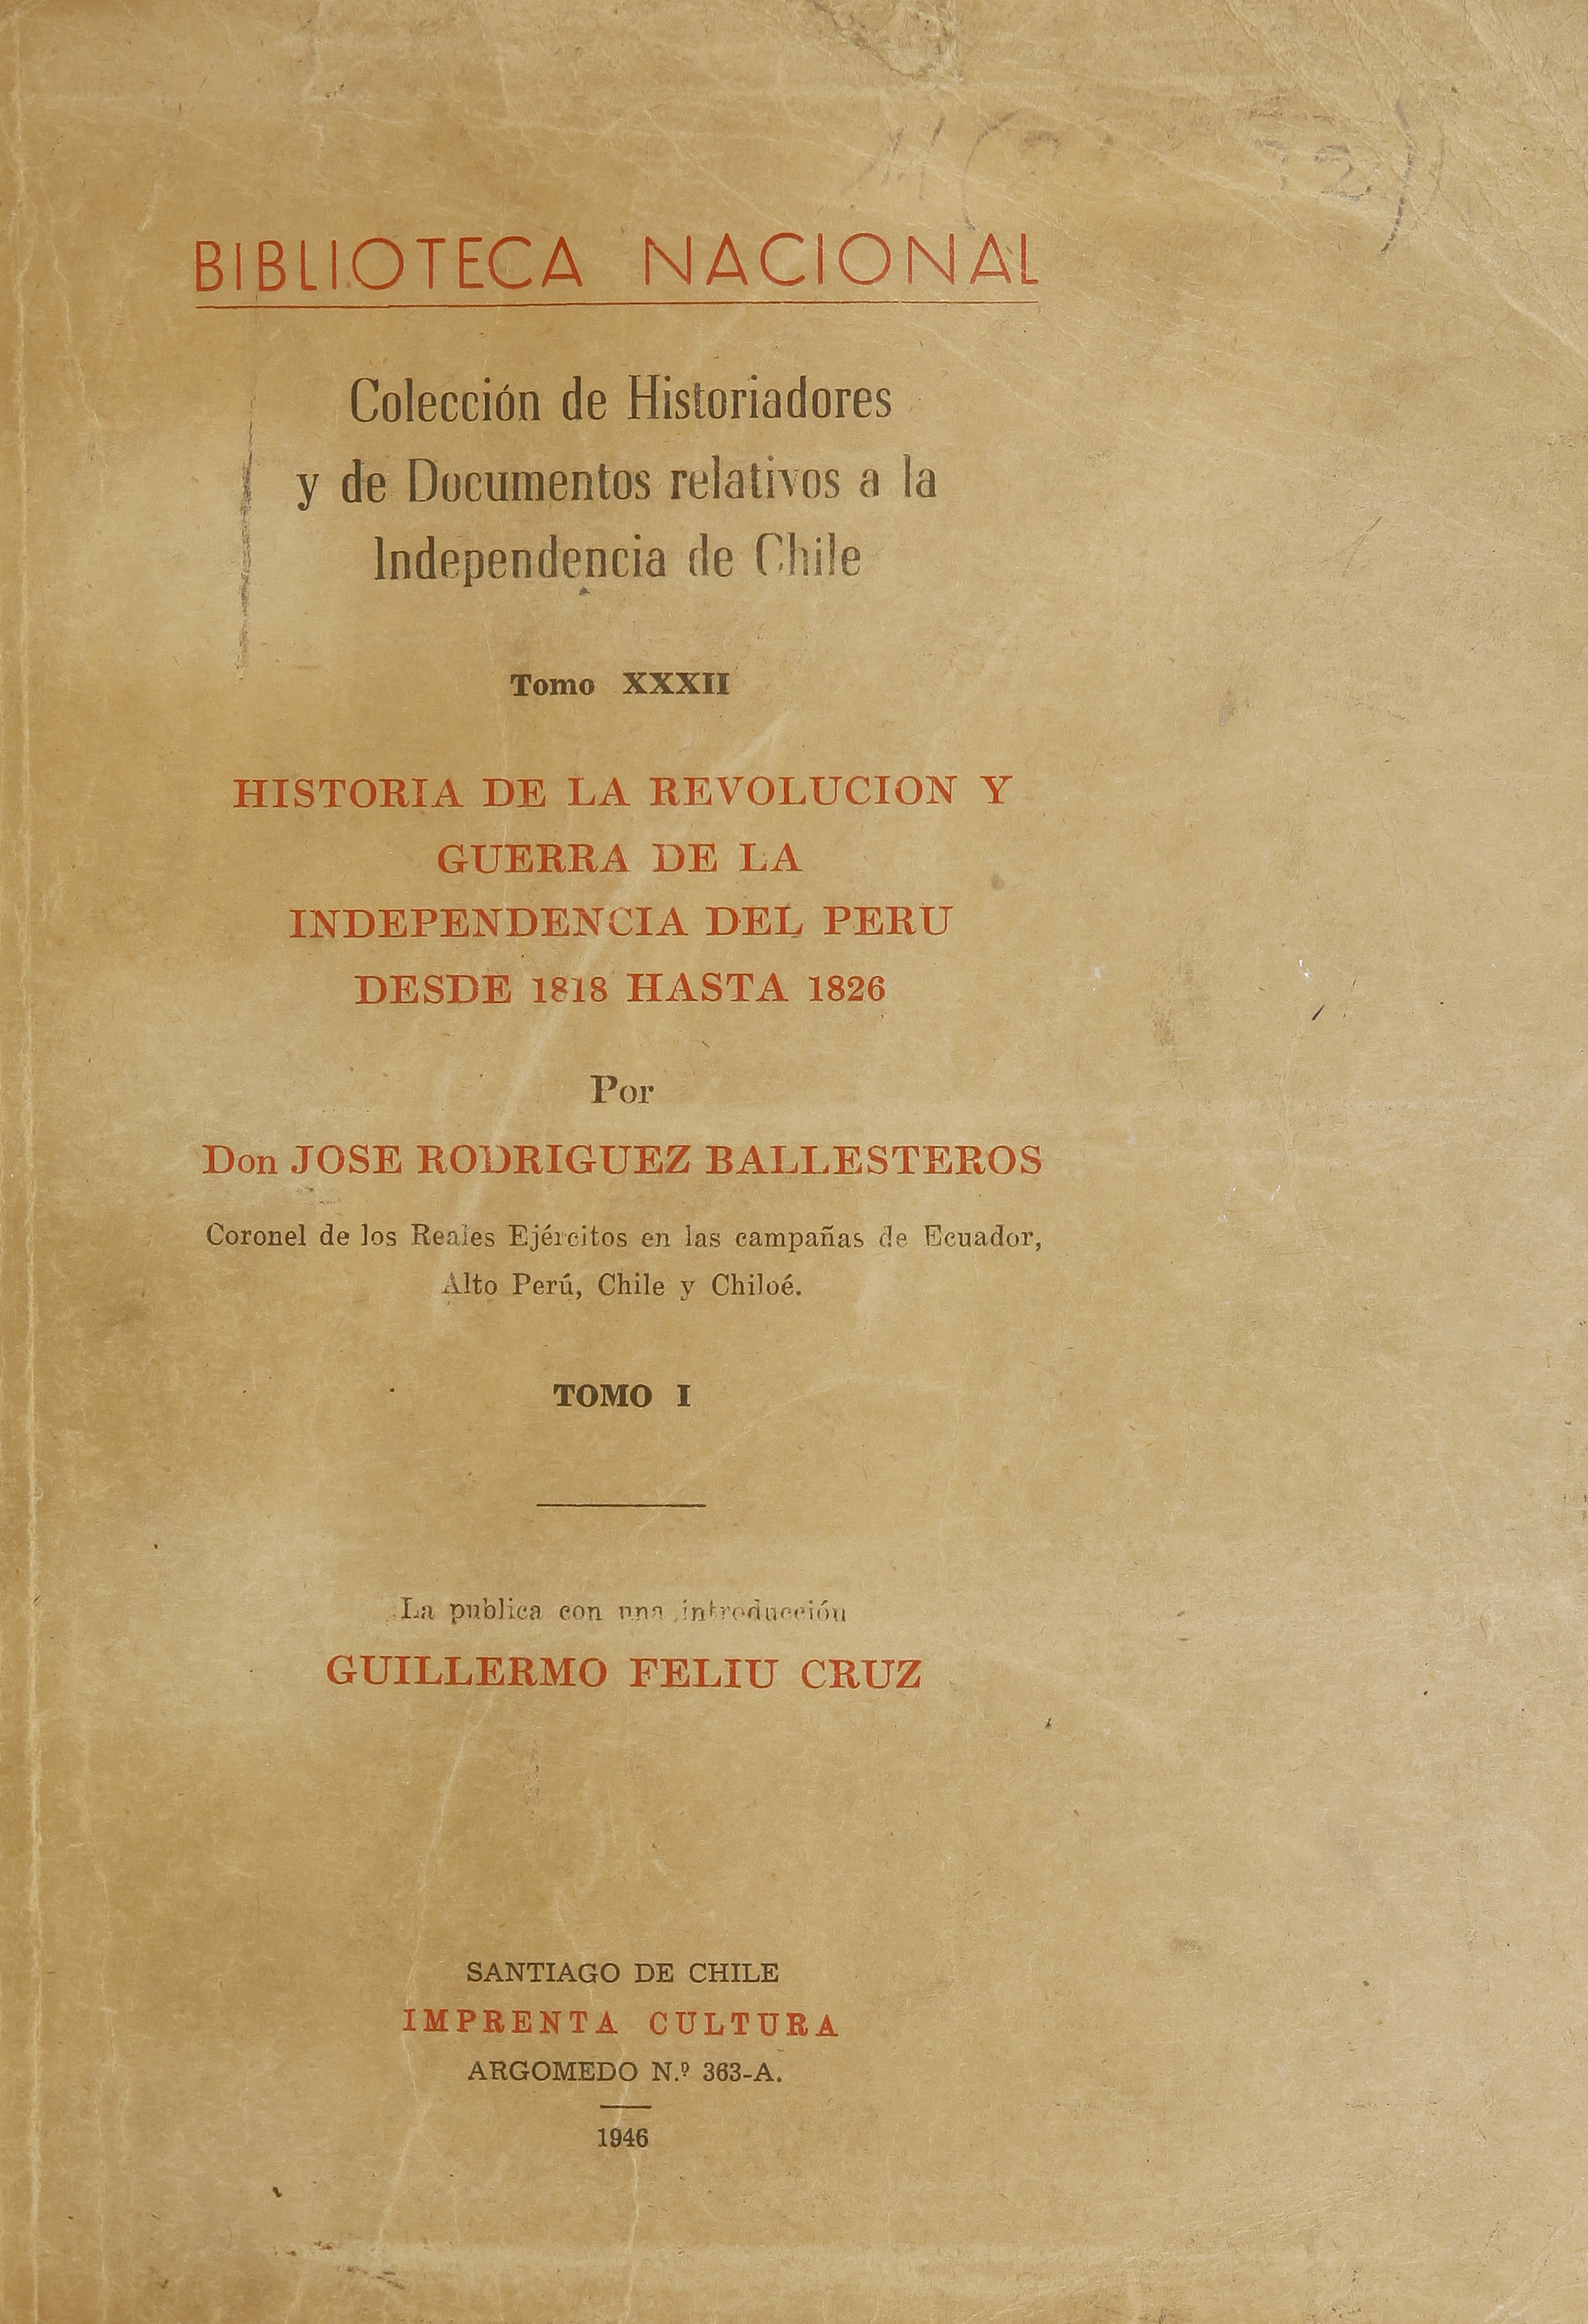 Colección de historiadores y de documentos relativos a la Independencia de Chile: tomo XXXII